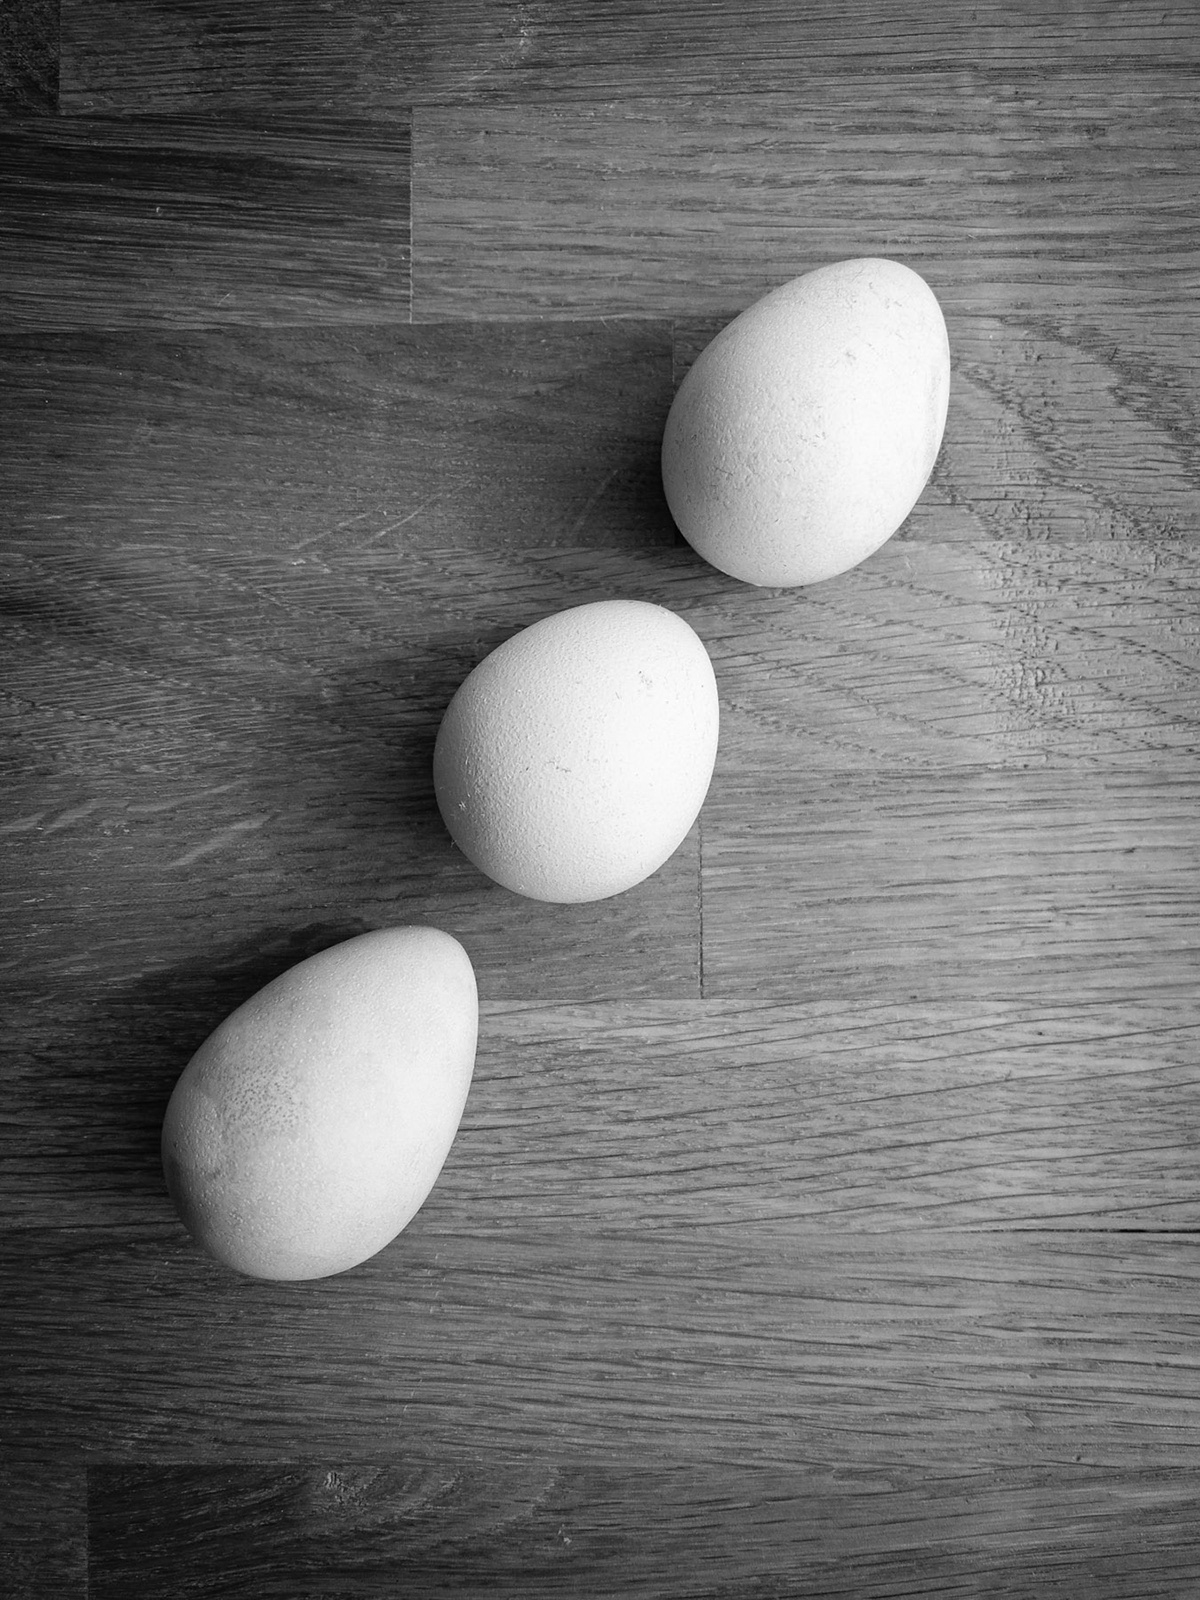 blackandwhite eggs guineafowl hardlight hen softlight Sun woodtable